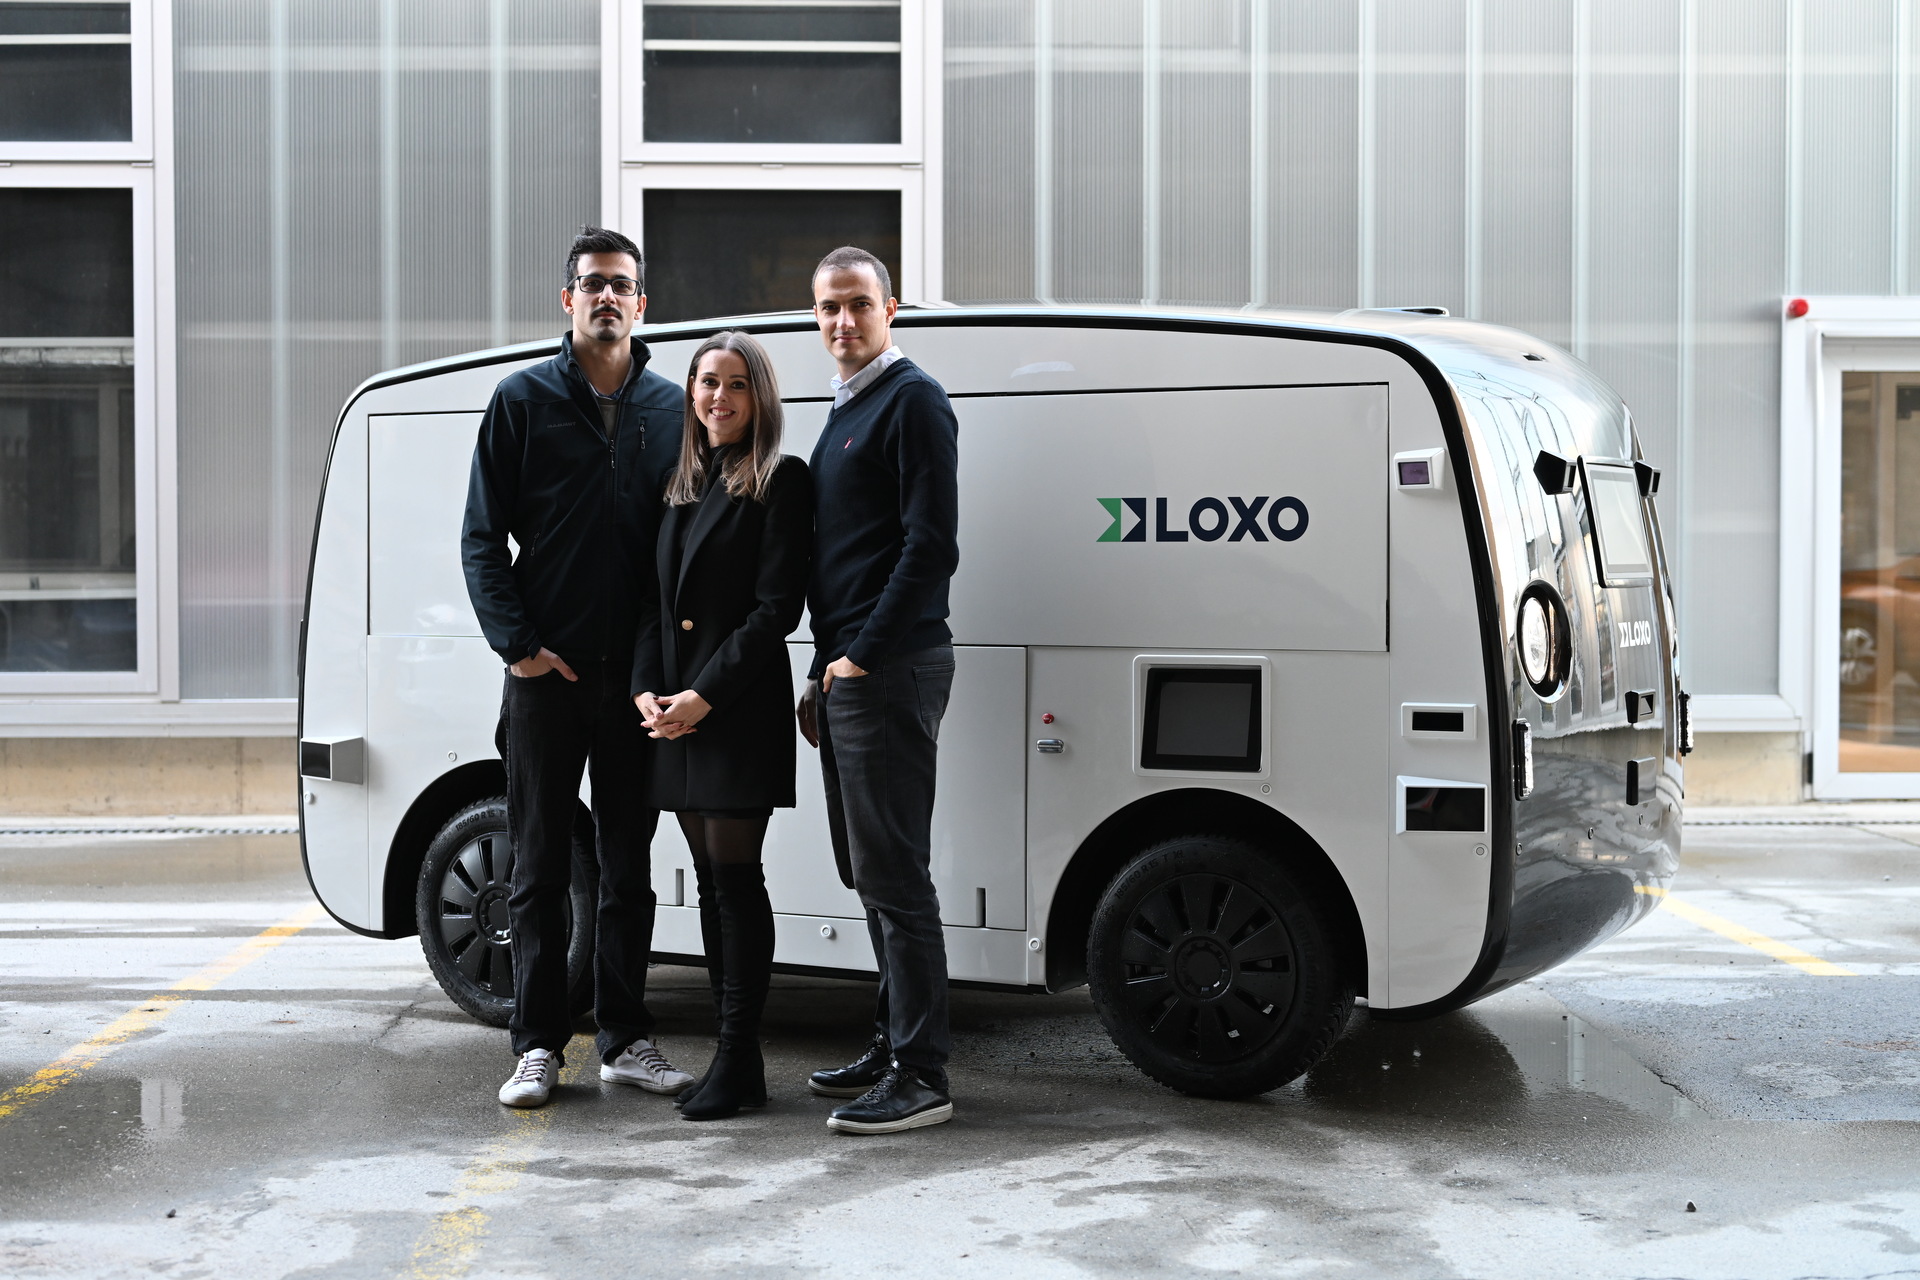 LOXO: Берн дэх гарааны LOXO-г үүсгэн байгуулагч Амин Амини, Лара Амини-Рентш, Клаудио Панизза нар Швейцарь улсад богино хугацааны хүргэлтийн зориулалттай өөрөө жолооддог фургон автомашиныг бүхэлд нь бүтээжээ.